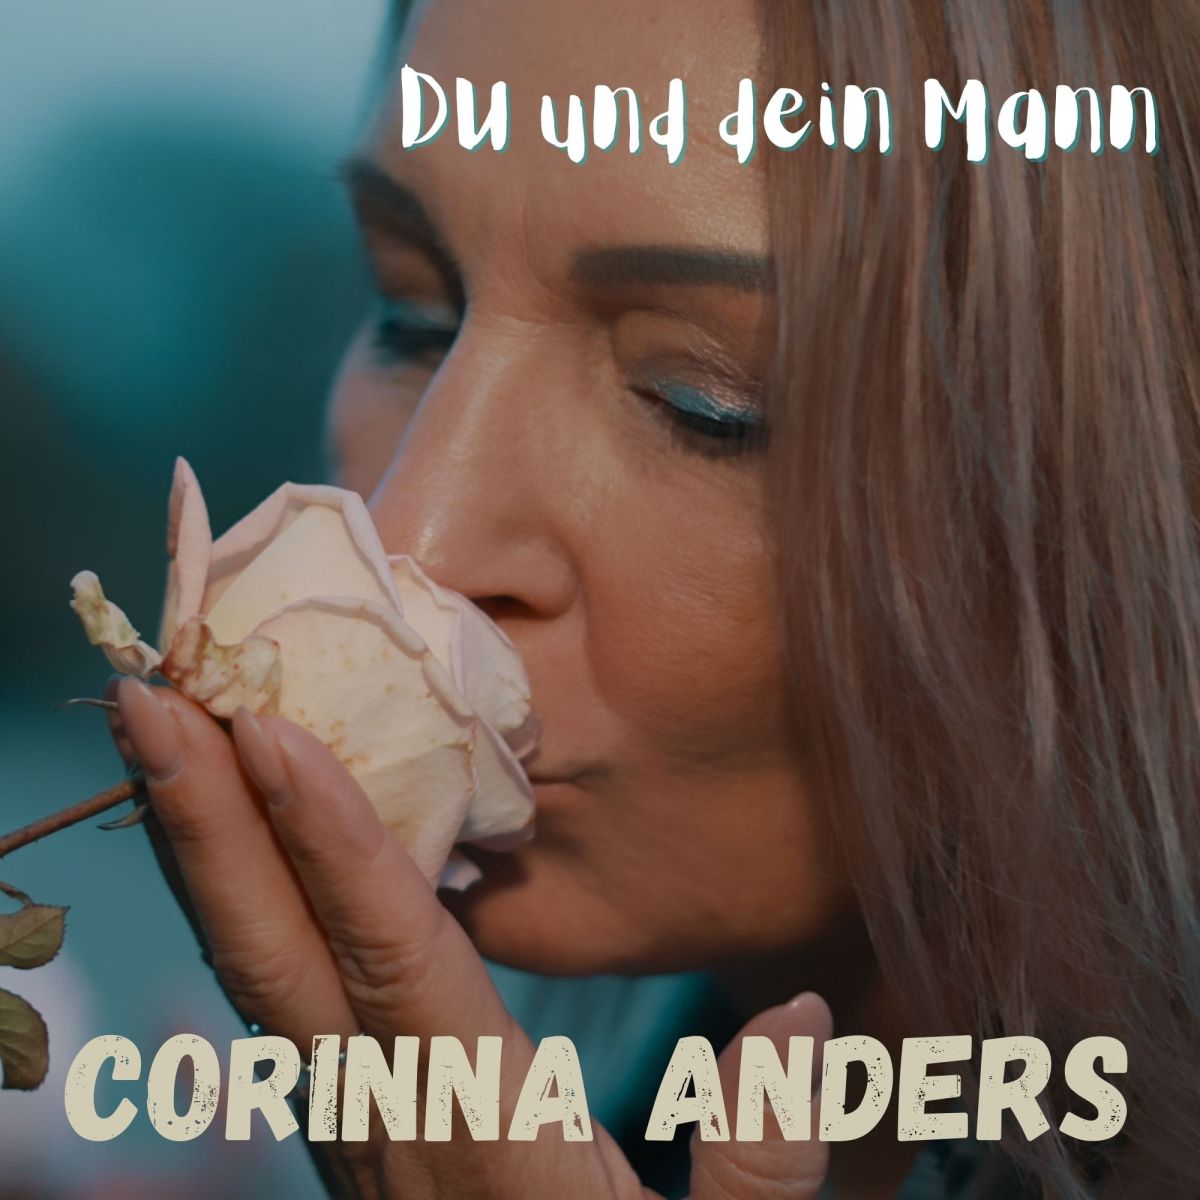 Corinna Anders - Du und Dein Man - Frontcover.jpg